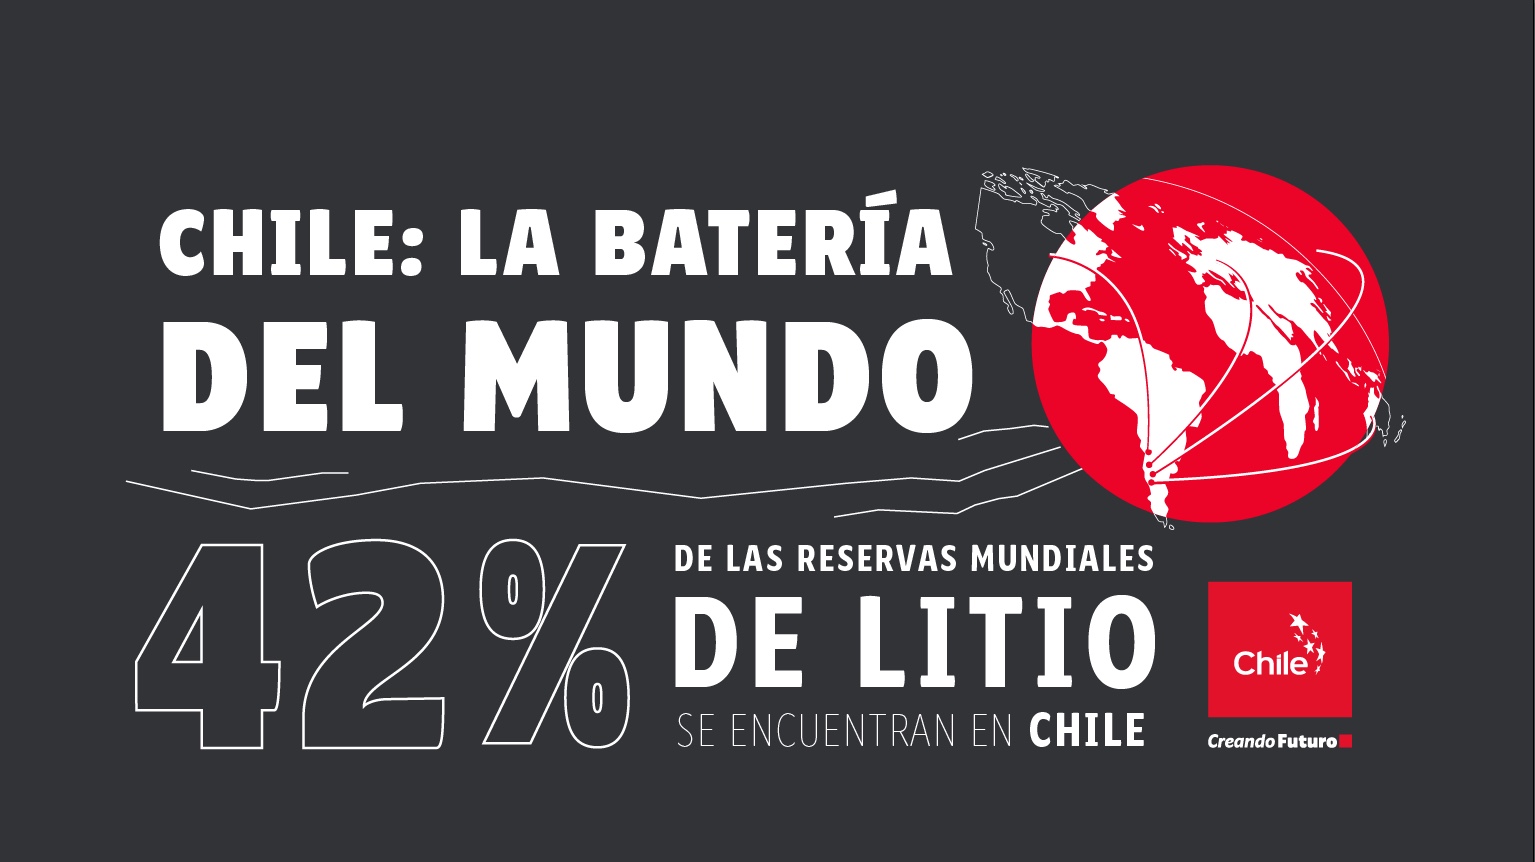 La batería del mundo / The world’s battery / A bateria do mundo | Marca Chile | Toolkit